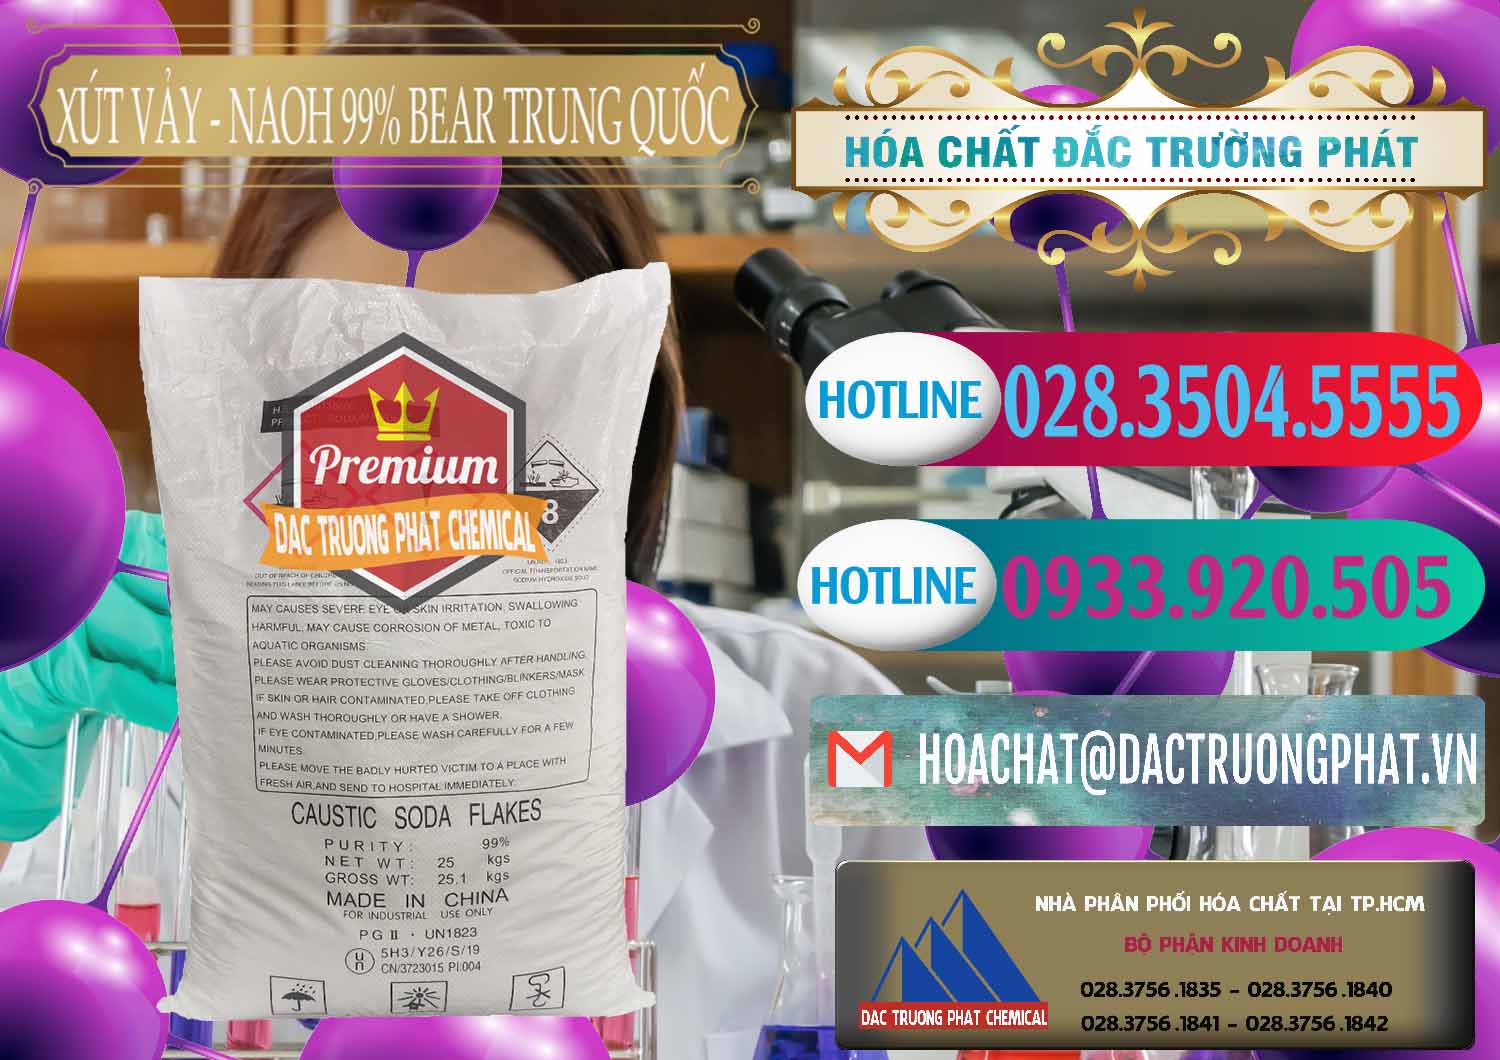 Nơi chuyên cung cấp và bán Xút Vảy - NaOH Vảy 99% Bear Sơn Đông Trung Quốc China - 0175 - Công ty phân phối - cung cấp hóa chất tại TP.HCM - truongphat.vn